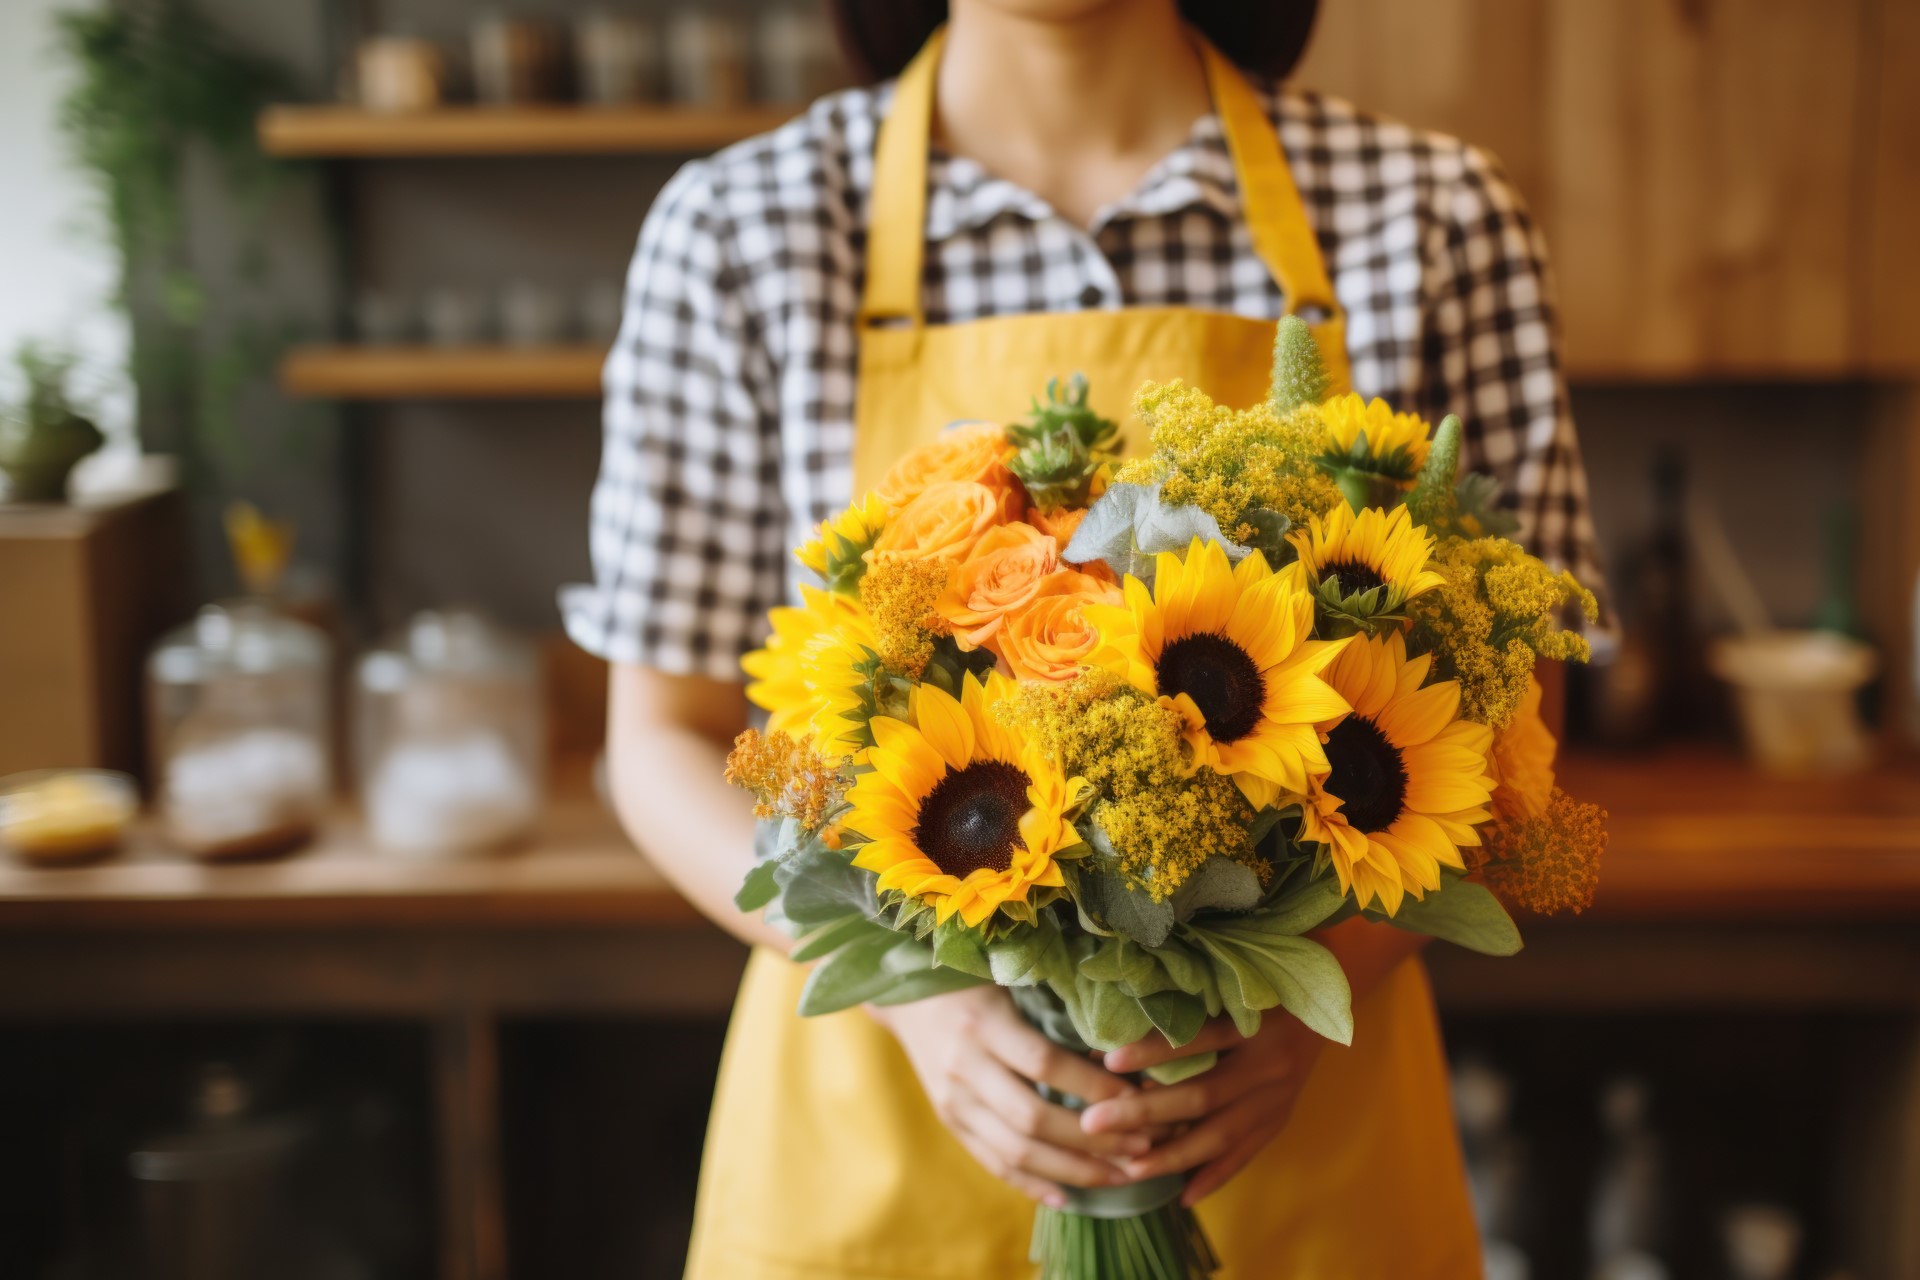 La tendencia de regalar flores amarillas se ha viralizado en redes sociales y ha globalizado este tradición.